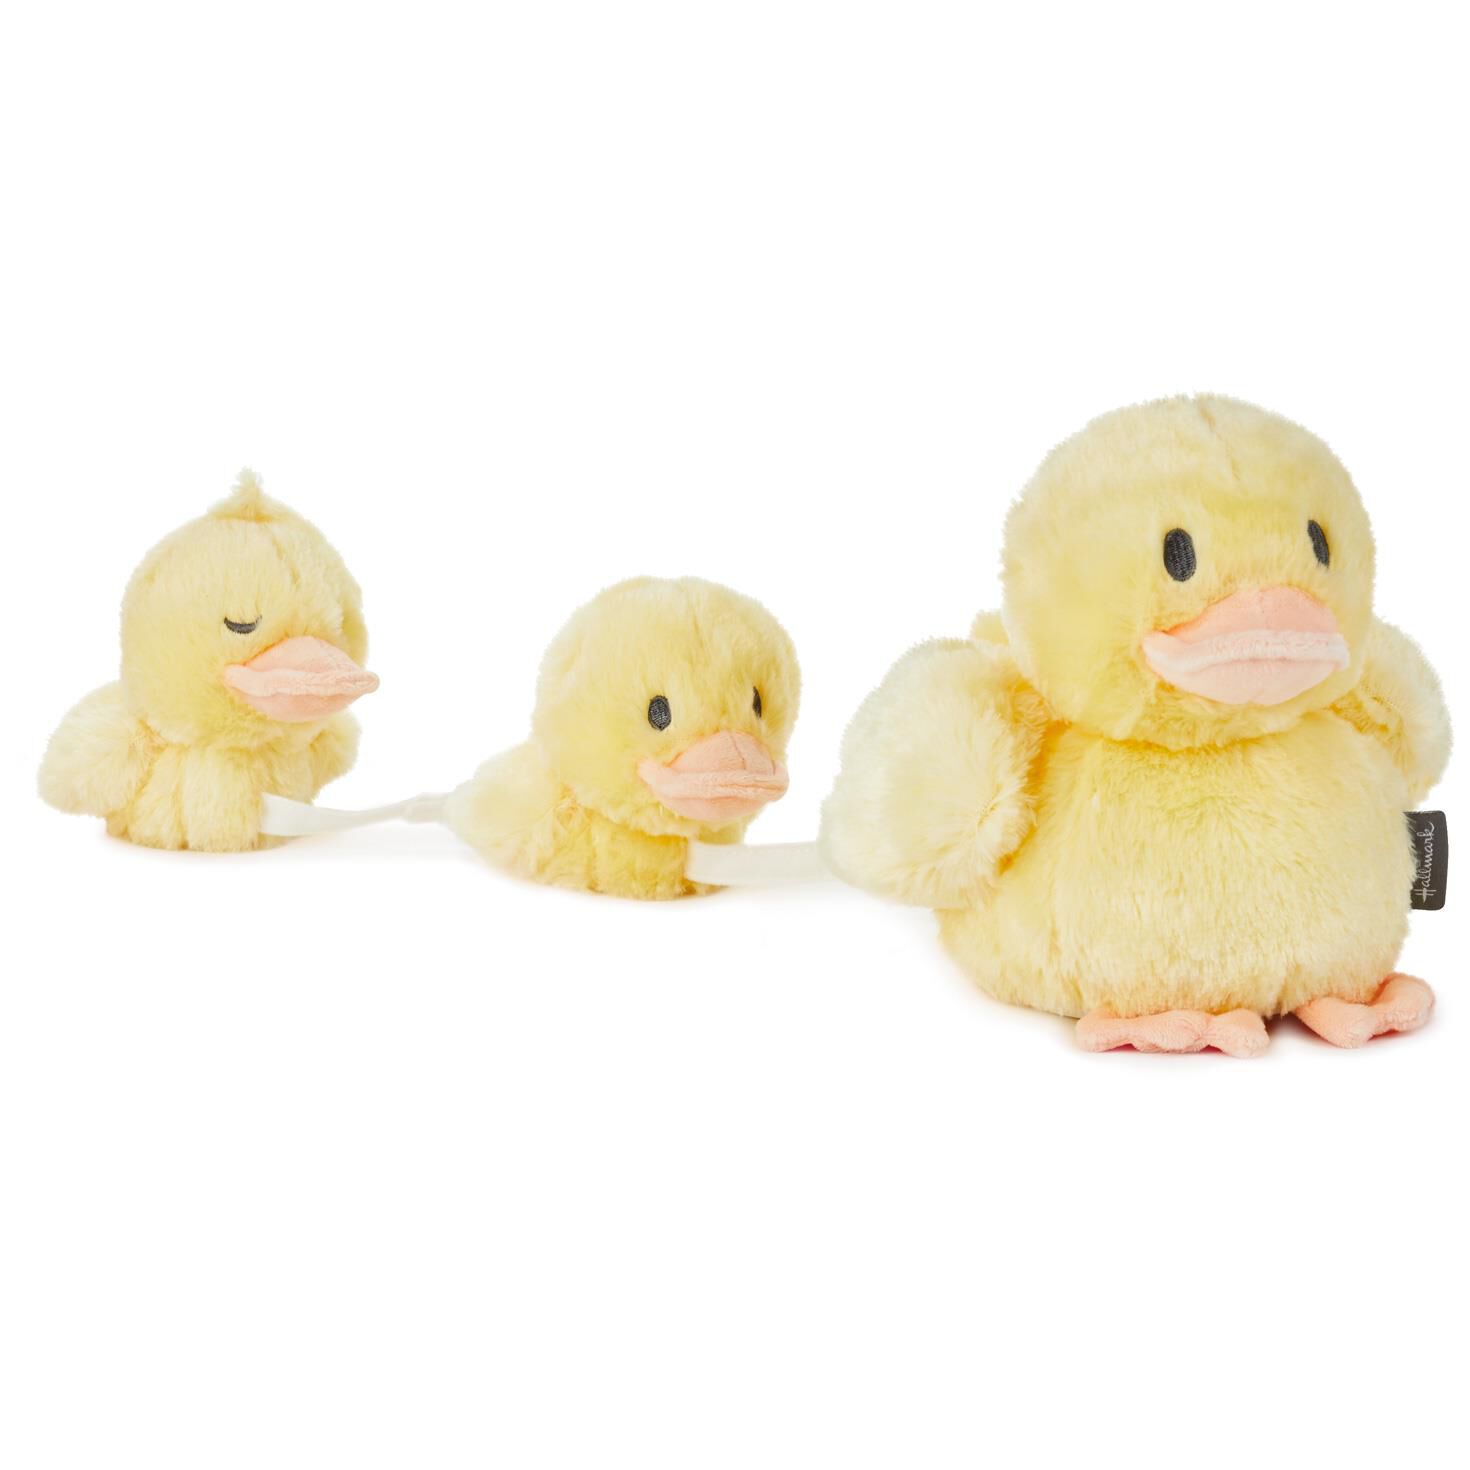 stuffed ducks